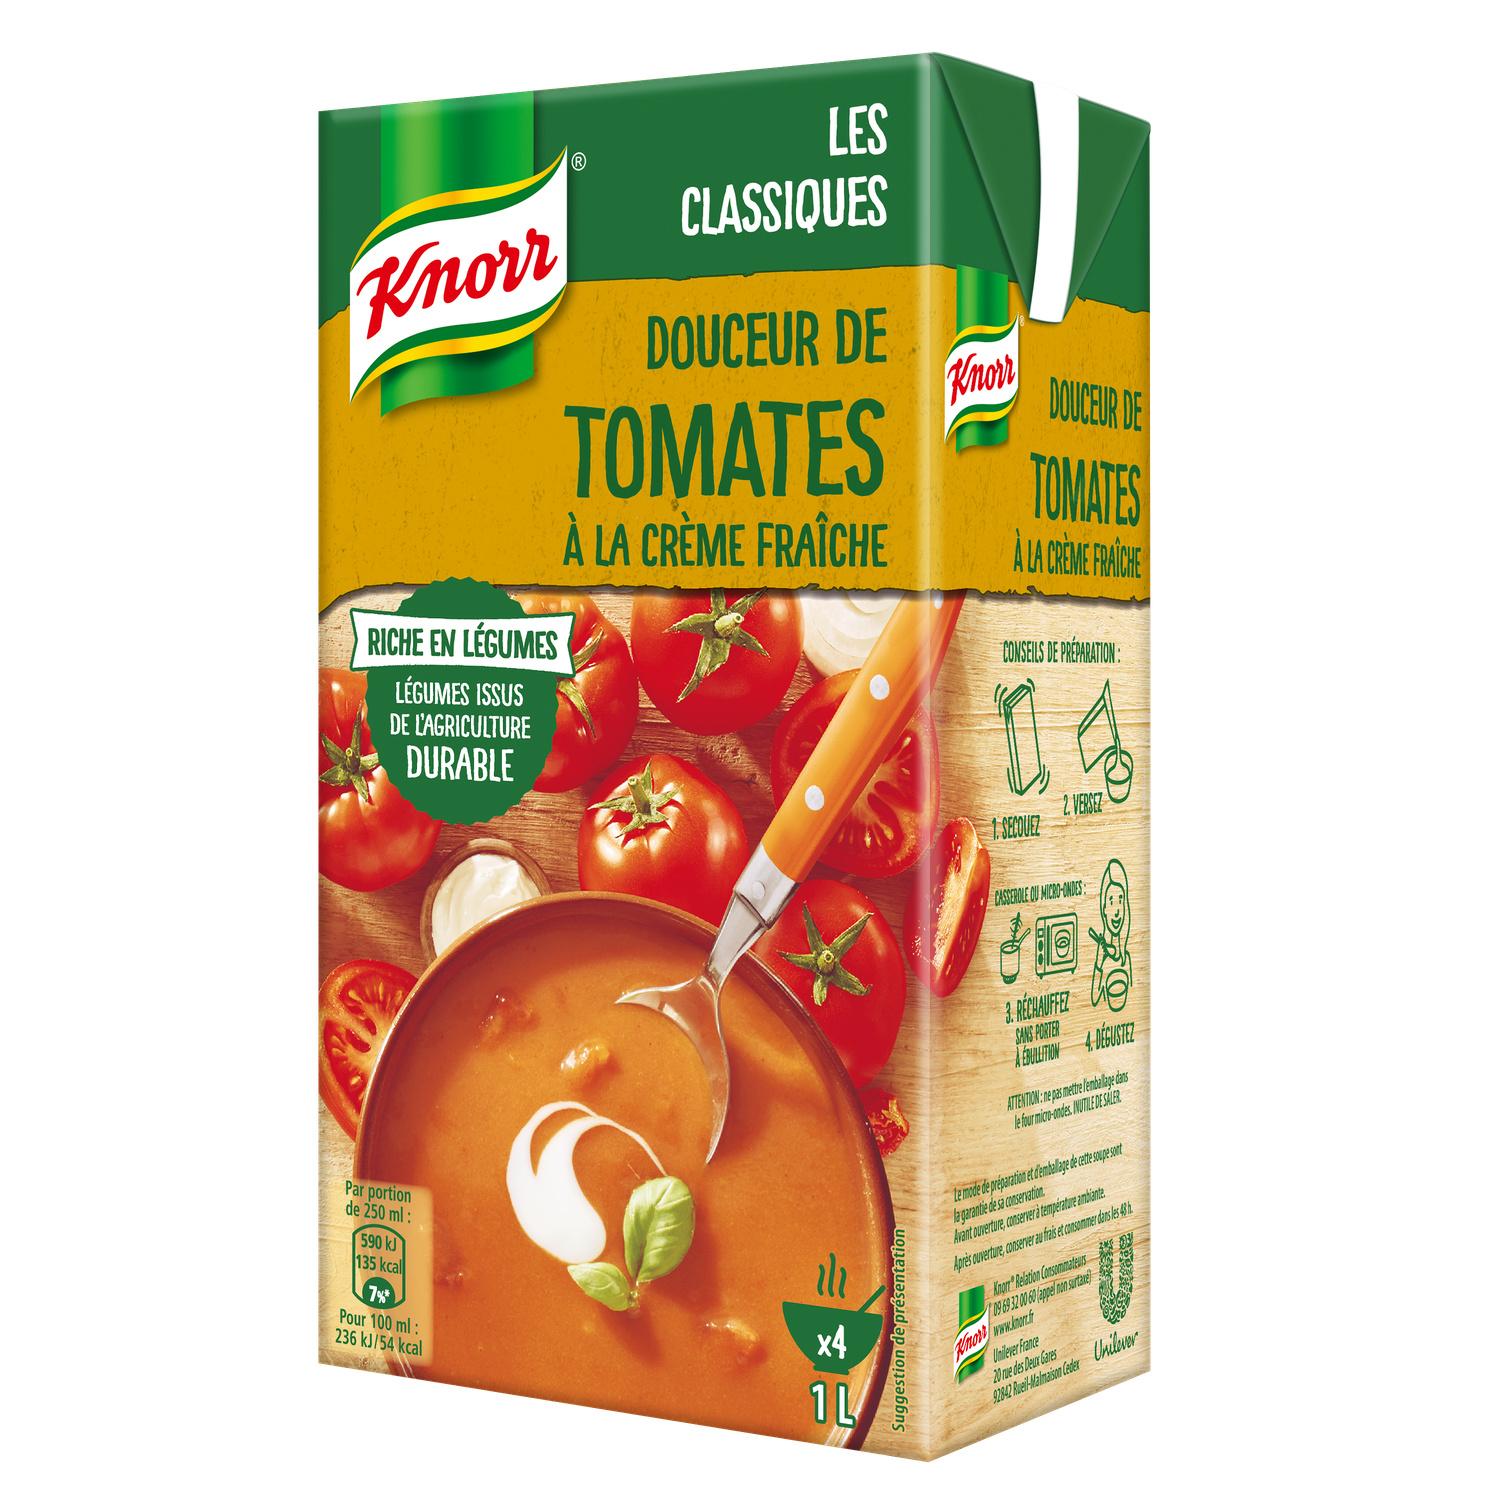 Soupe de Tomate Knorr